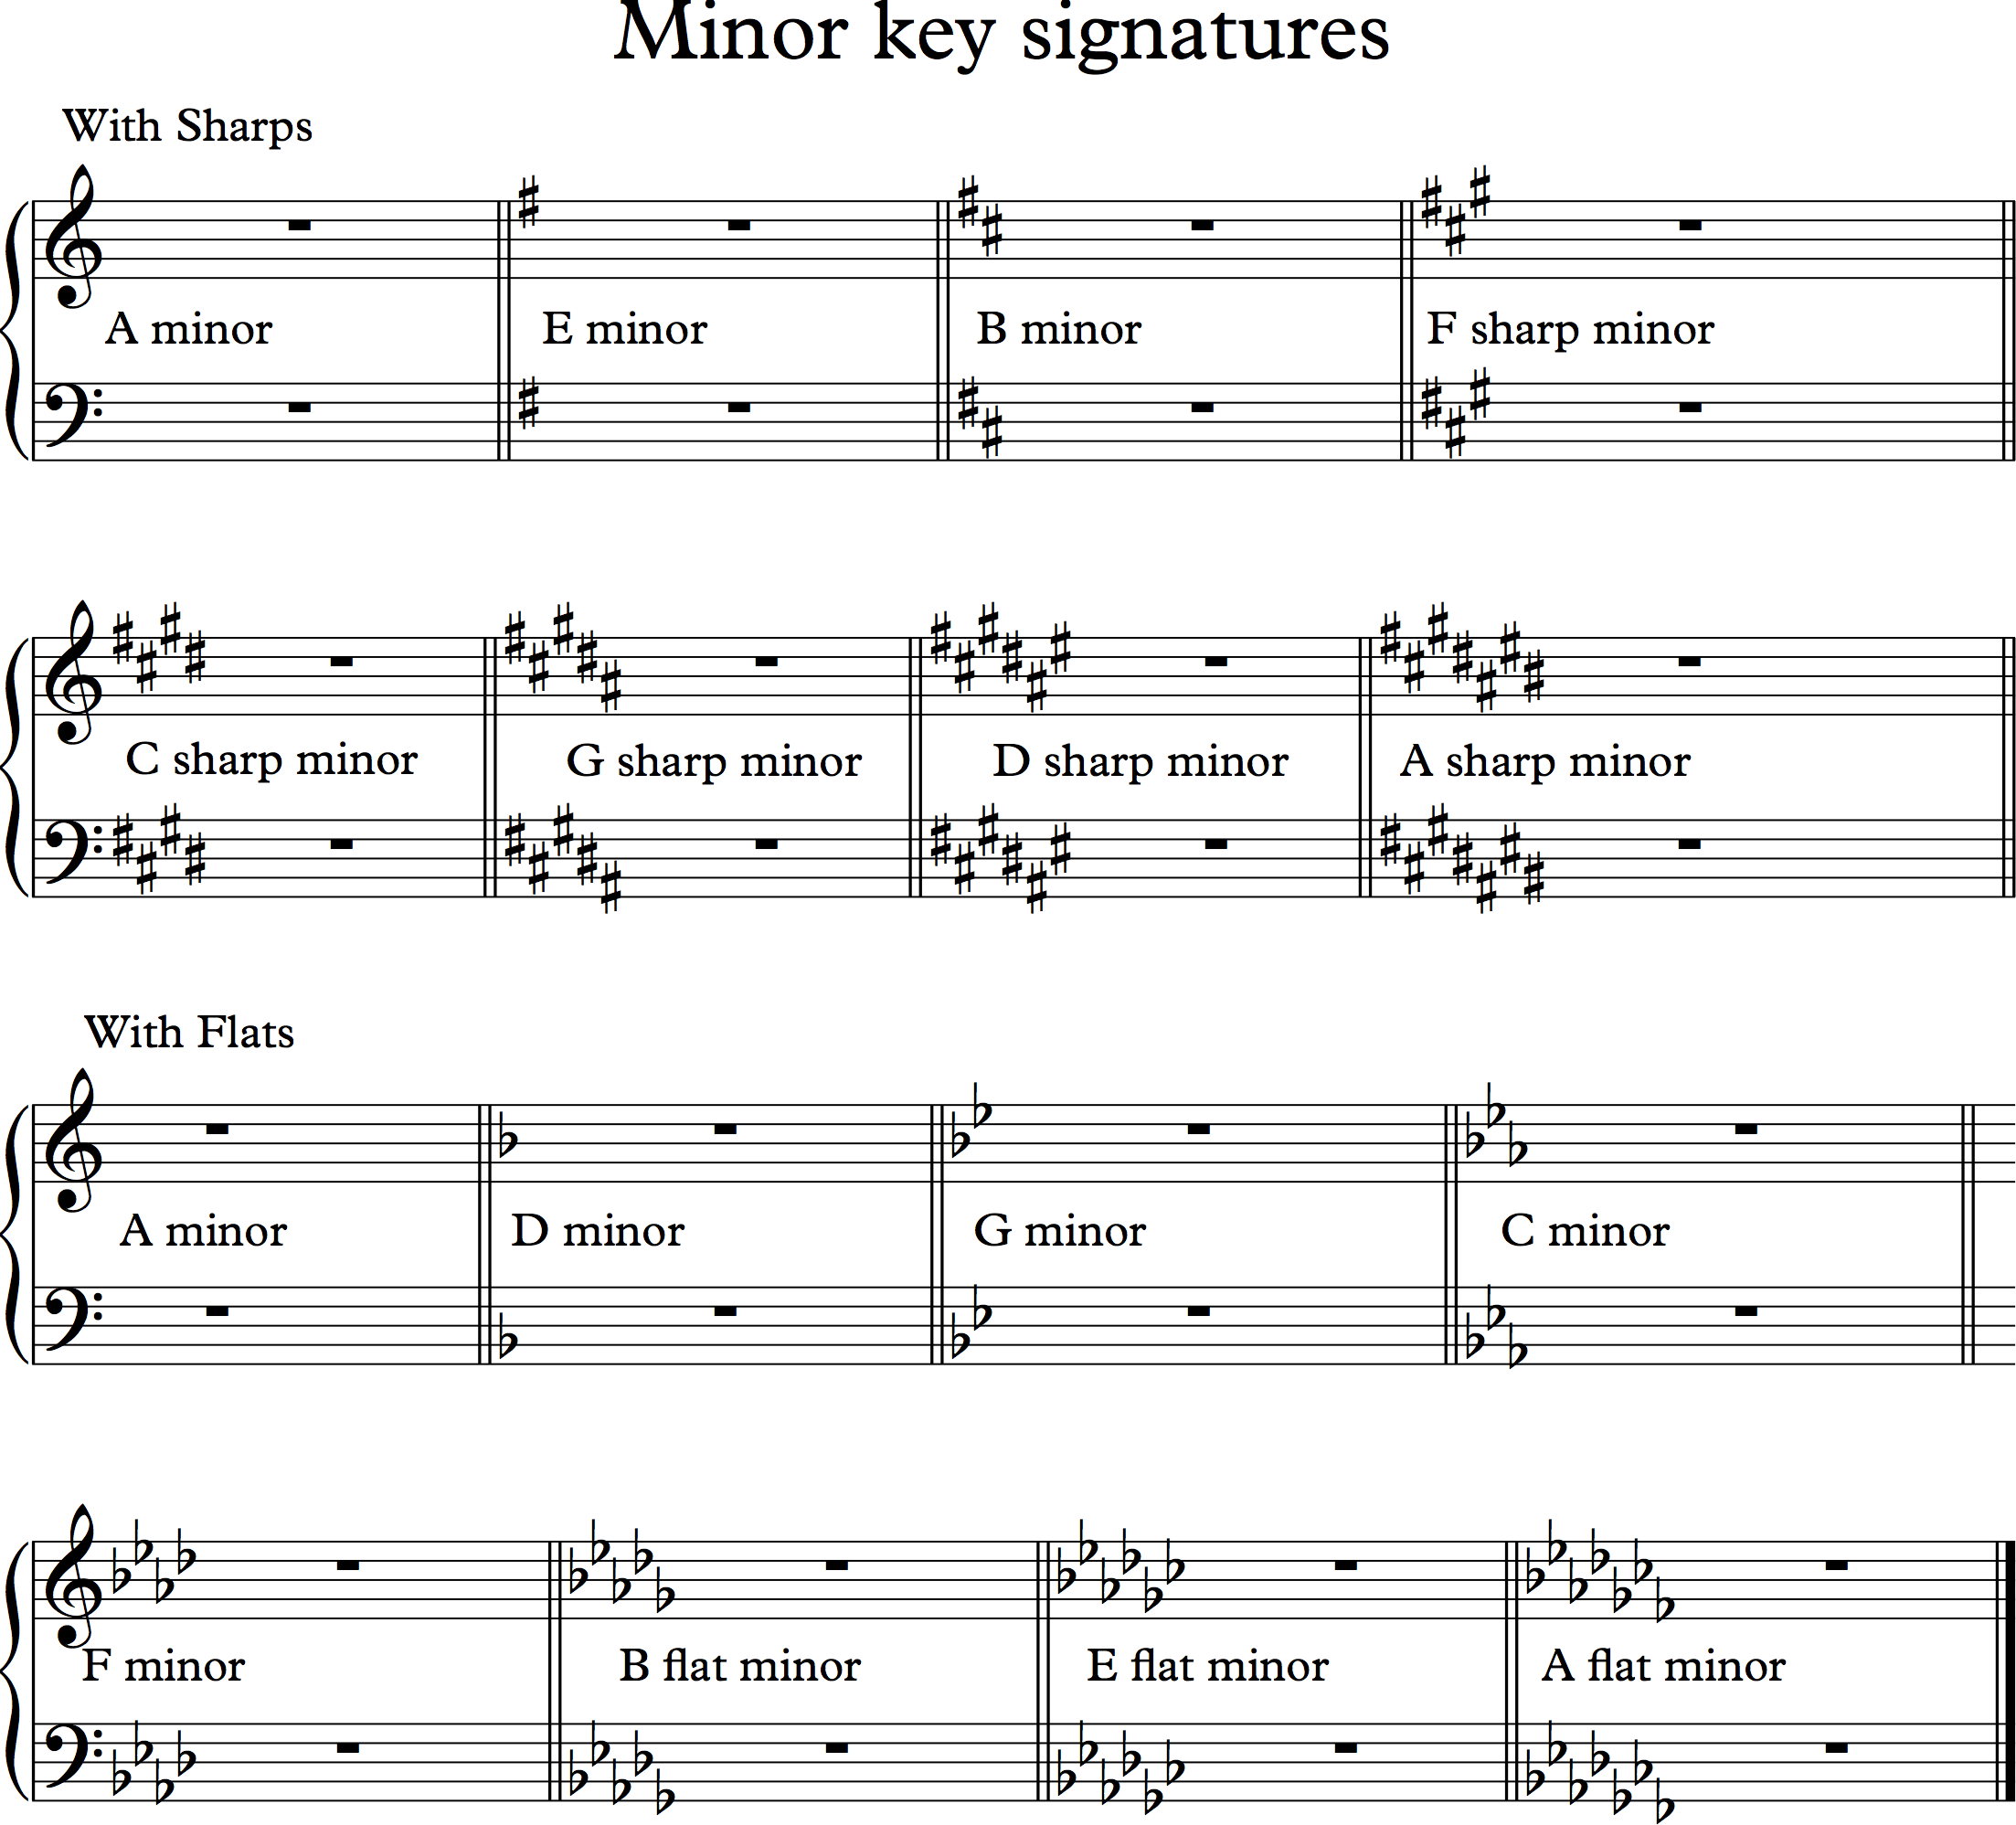 e flat minor key signature bass clef